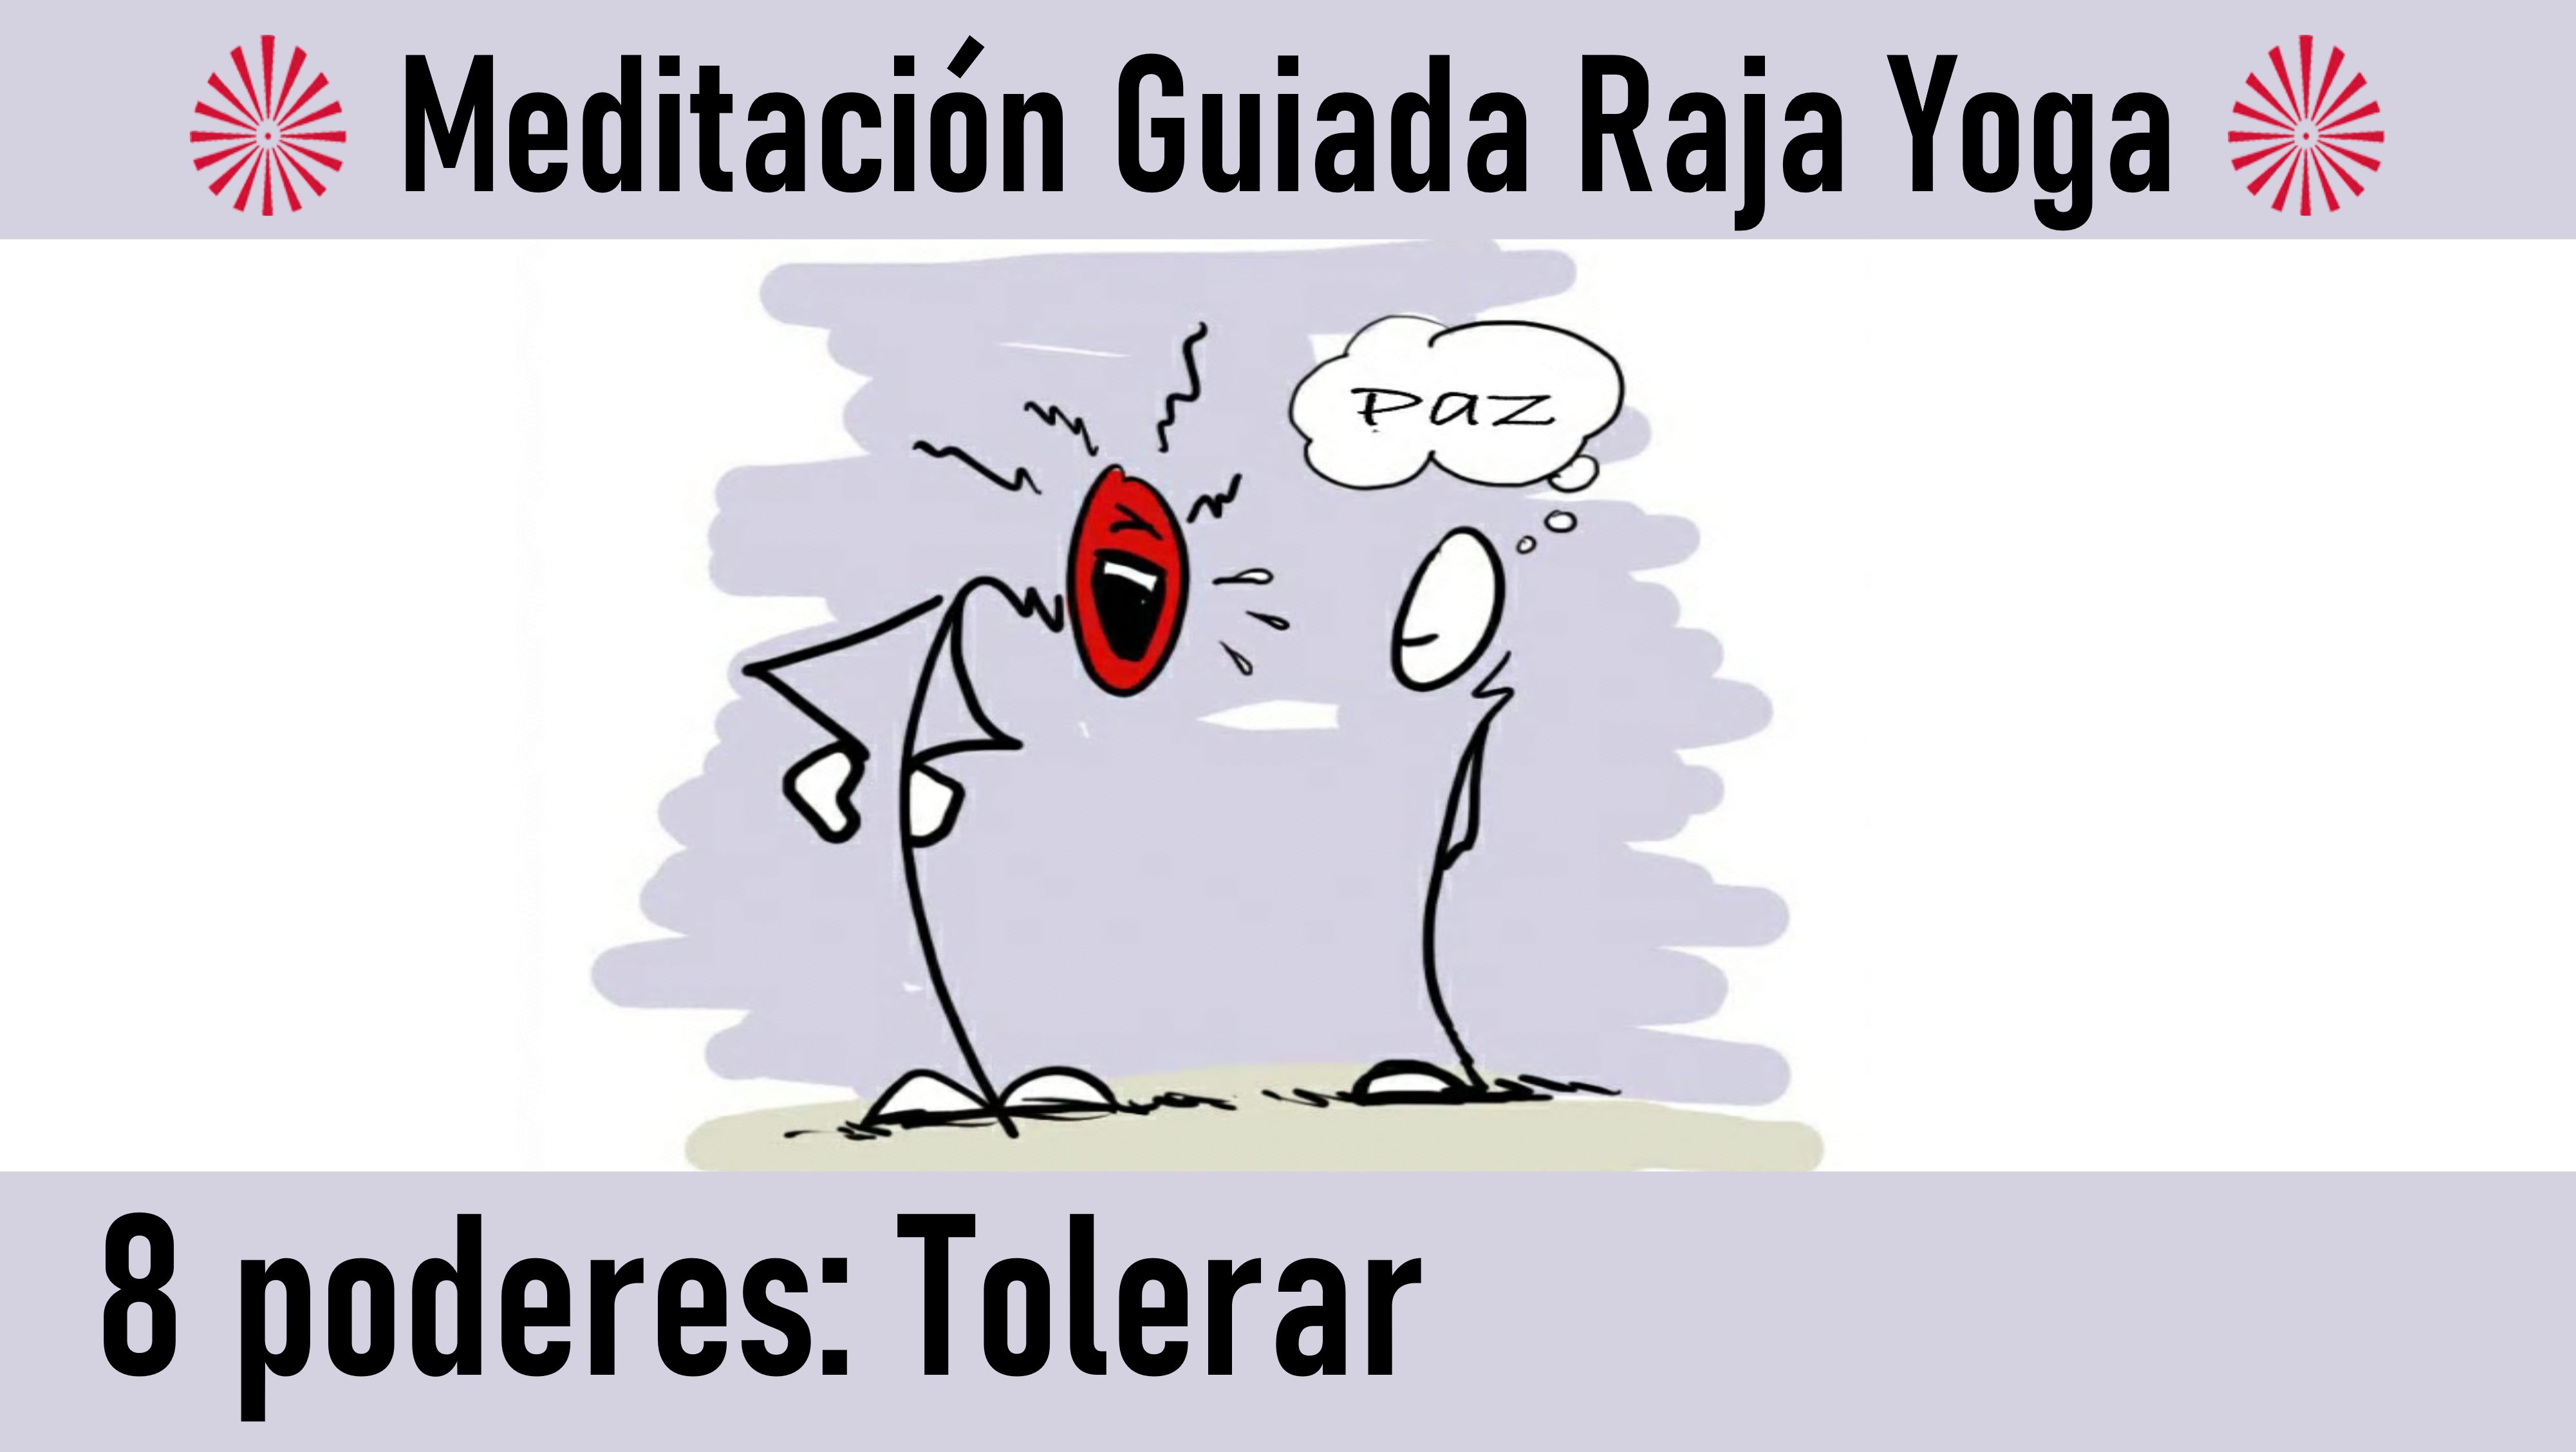 Meditación Raja Yoga. Los 8 poderes: Tolerar (23 Junio 2020) On-line desde Canarias